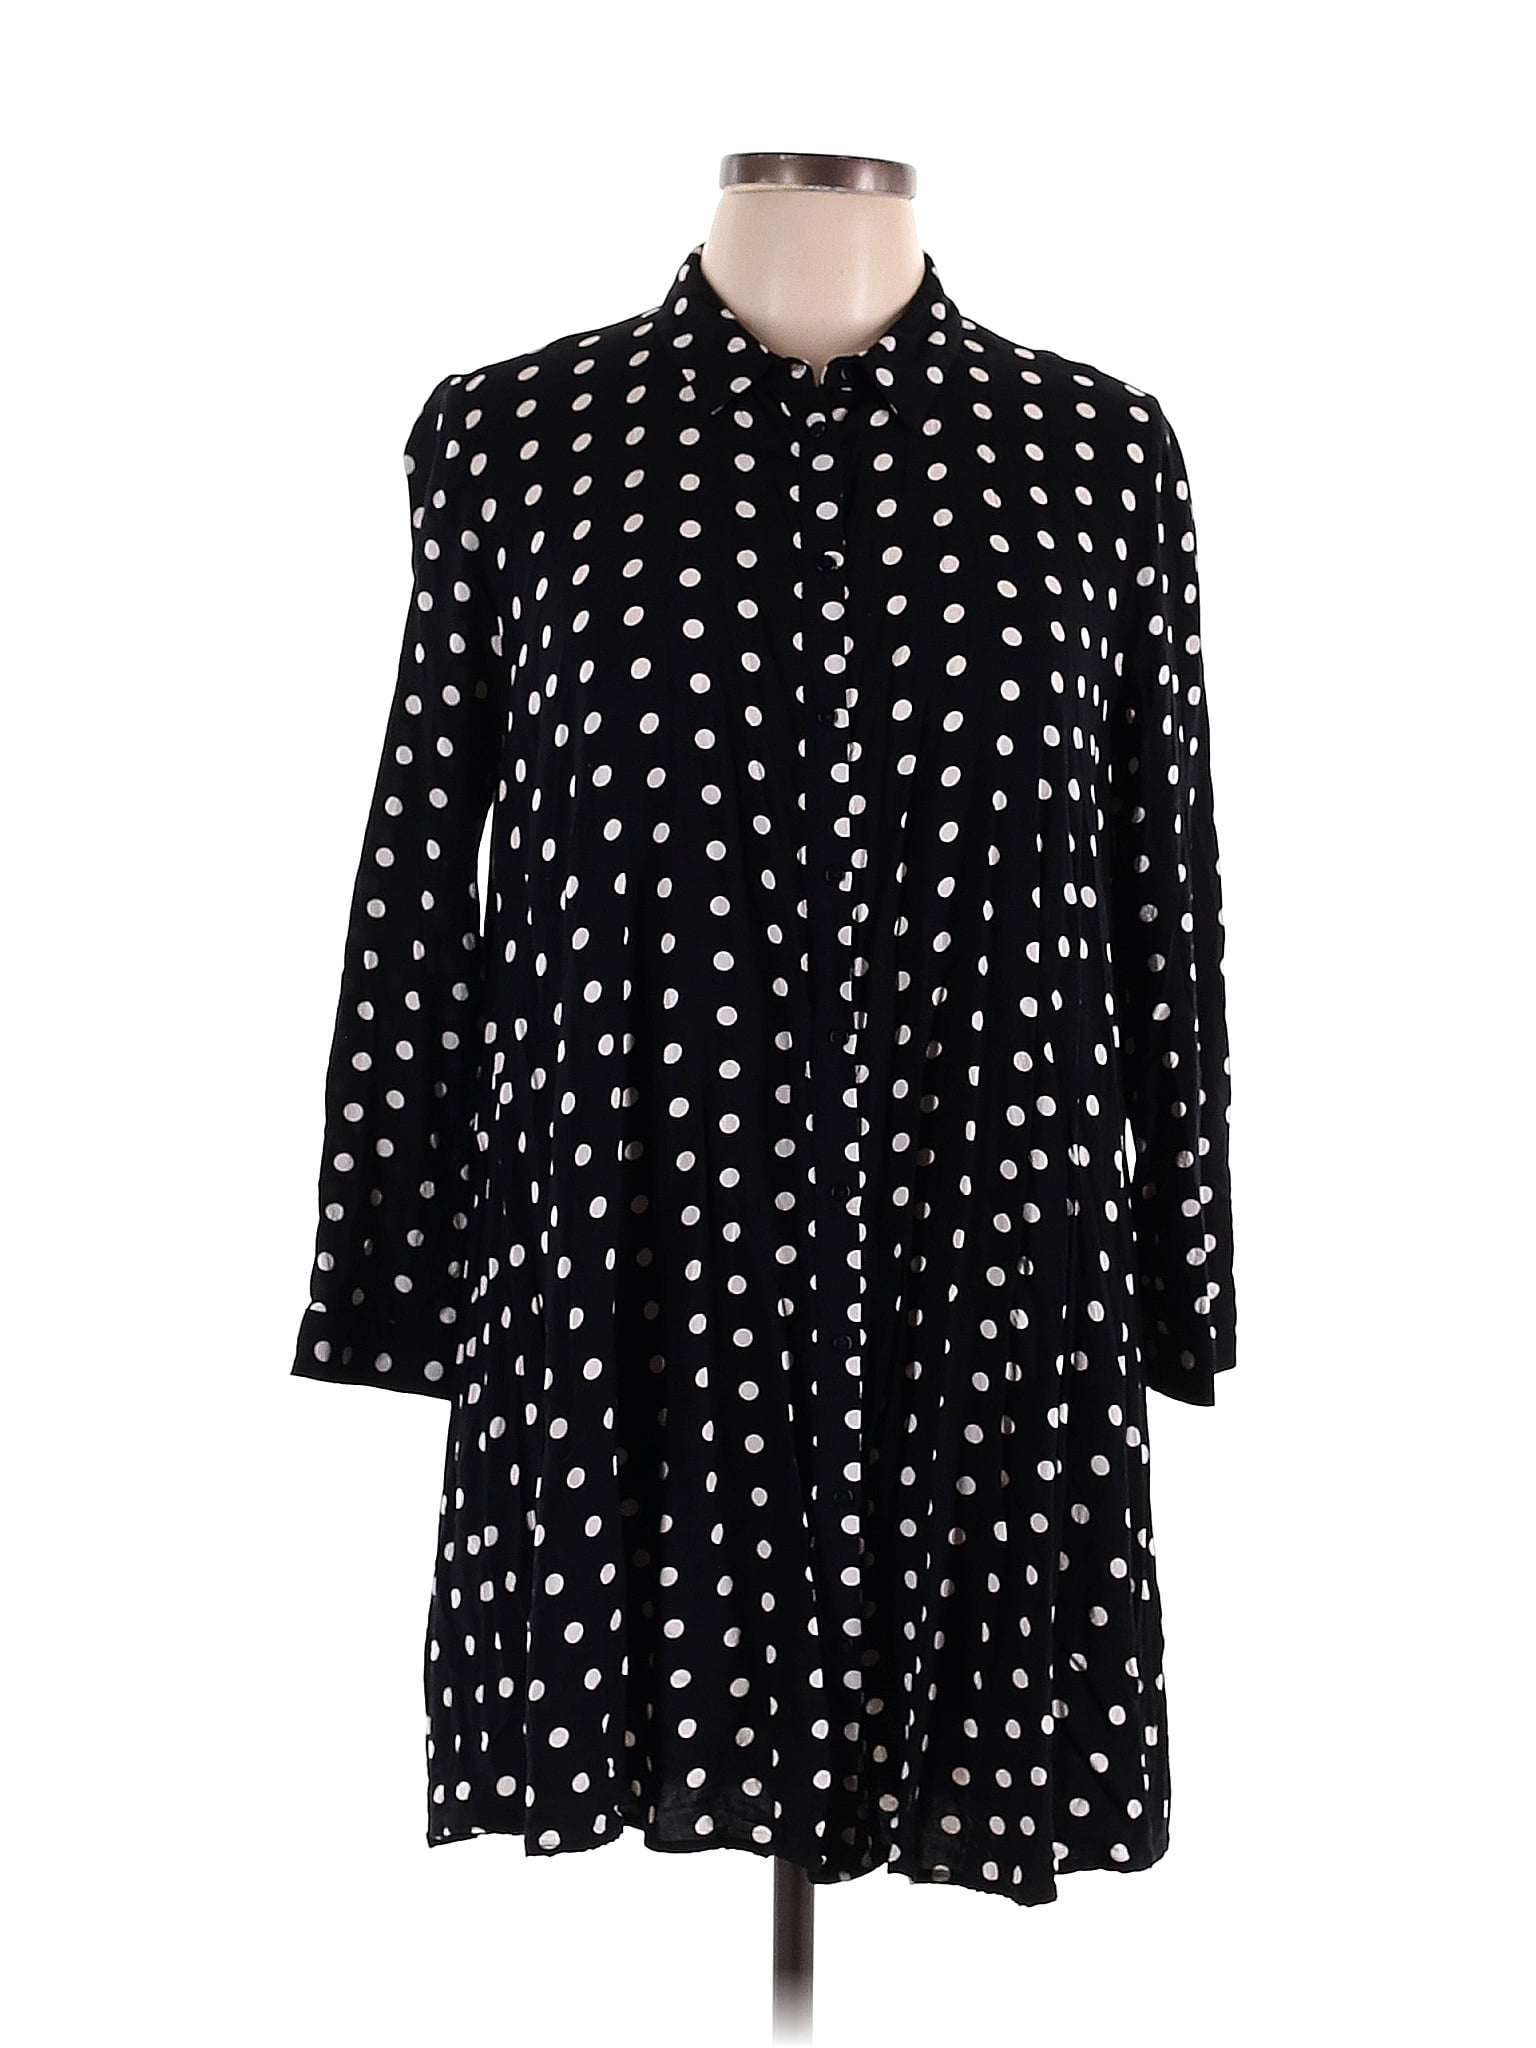 Zara Polka Dots Black Casual Dress Size L - 40% off | thredUP